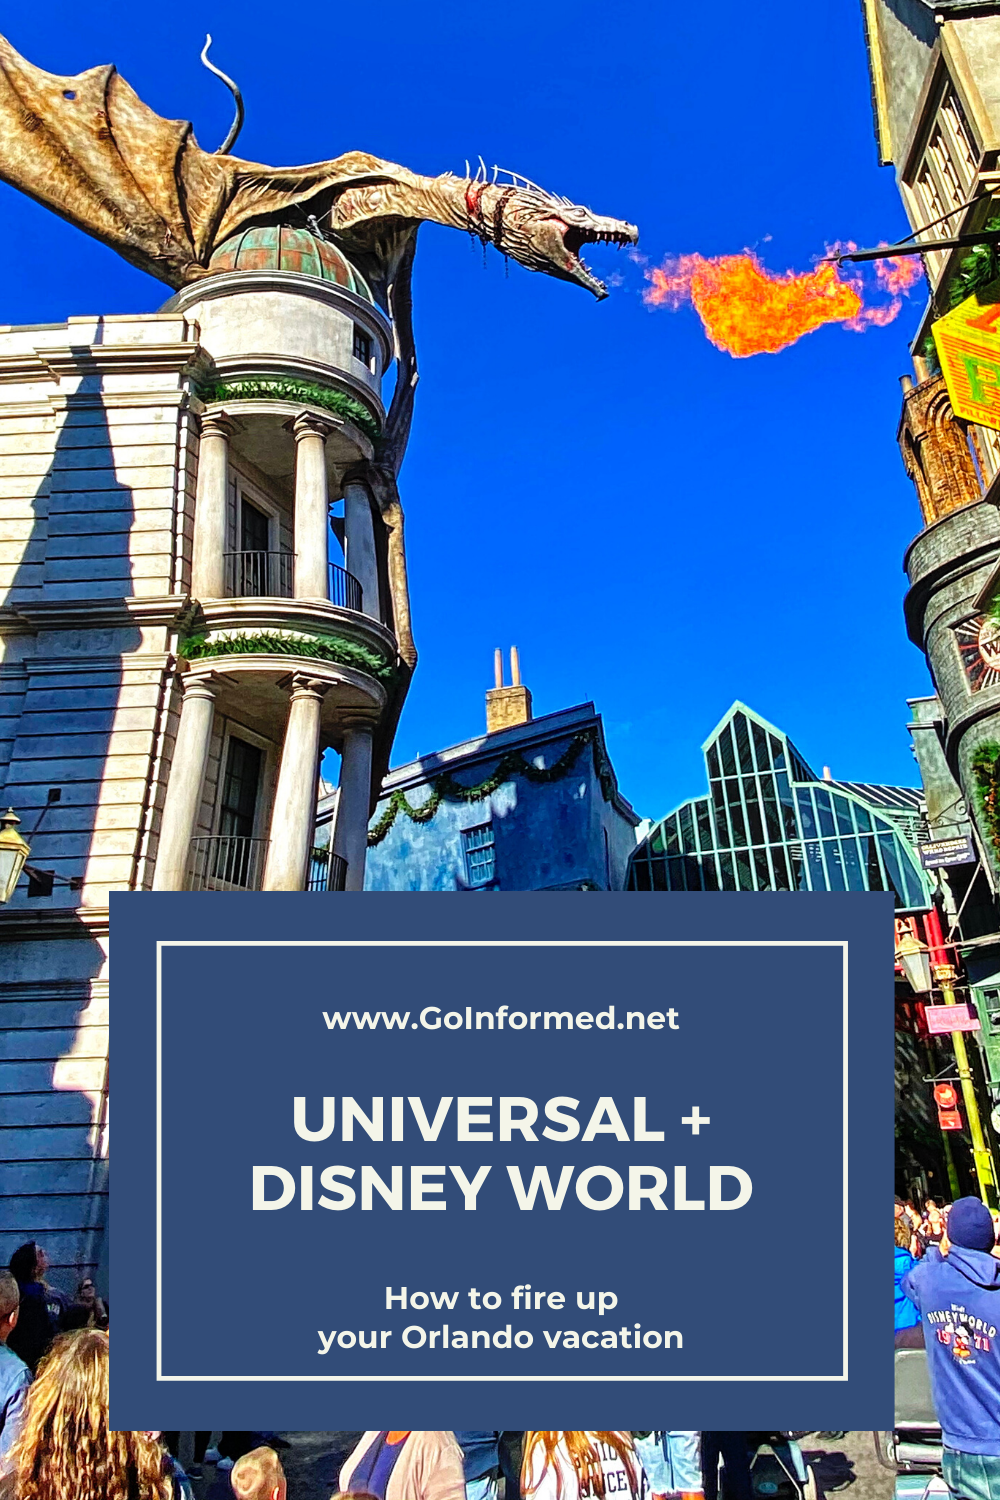  lägga till ett besök i Universal till din Disney World-resa